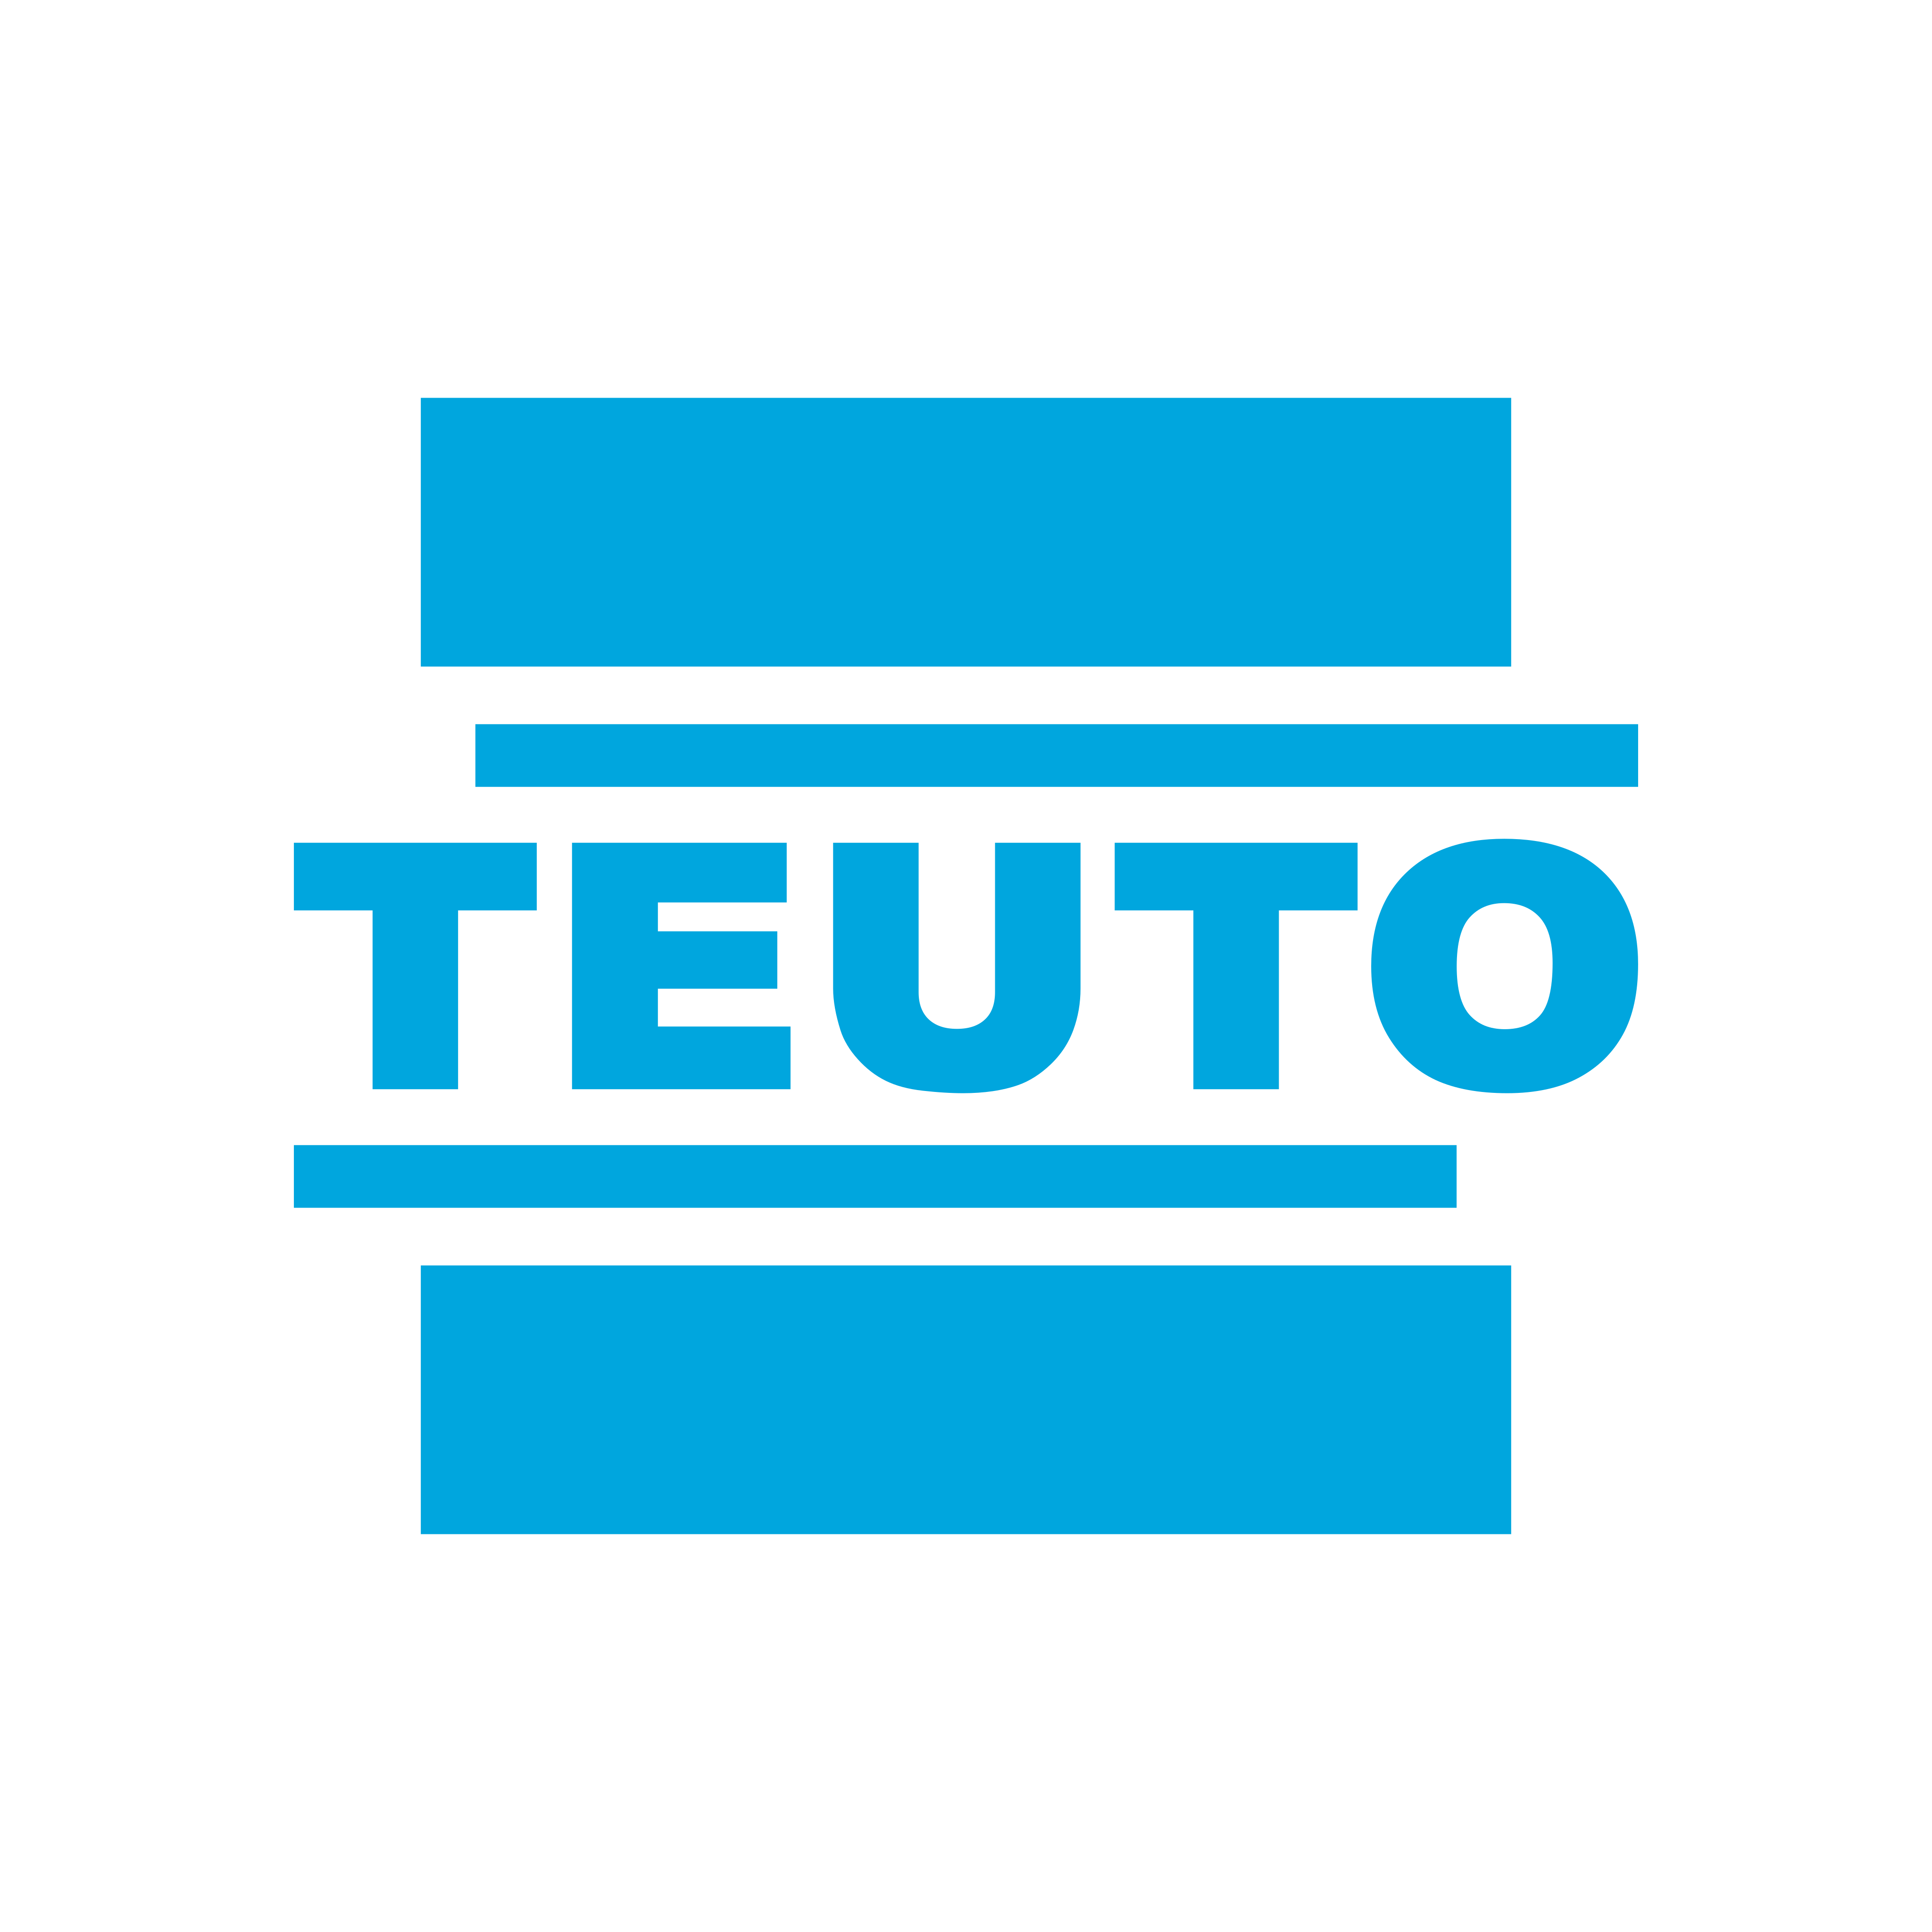 Teuto Logo PNG.